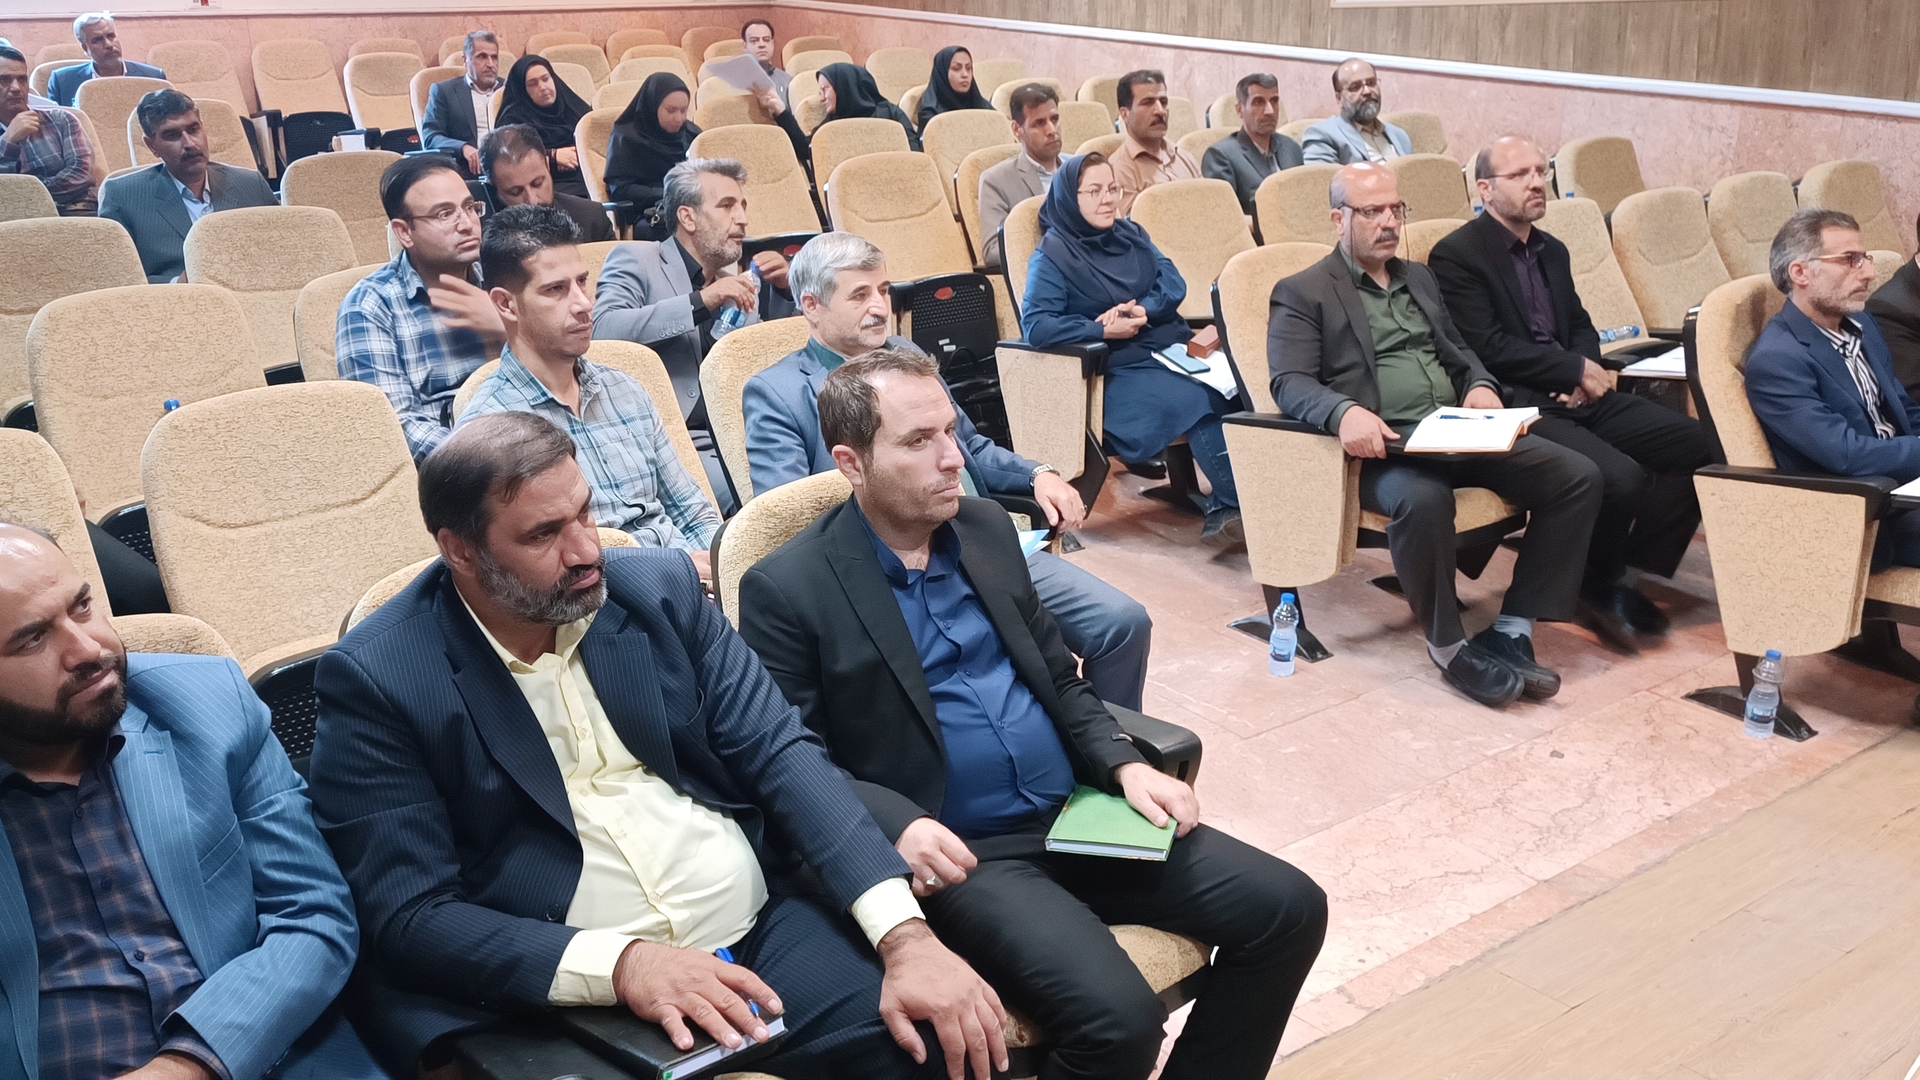 جلسه و نشست مشترک کارگروه اقتصادی ، اشتغال وسرمایه گذاری و شورای مهارت در شهرستان شازند برگزار شد .